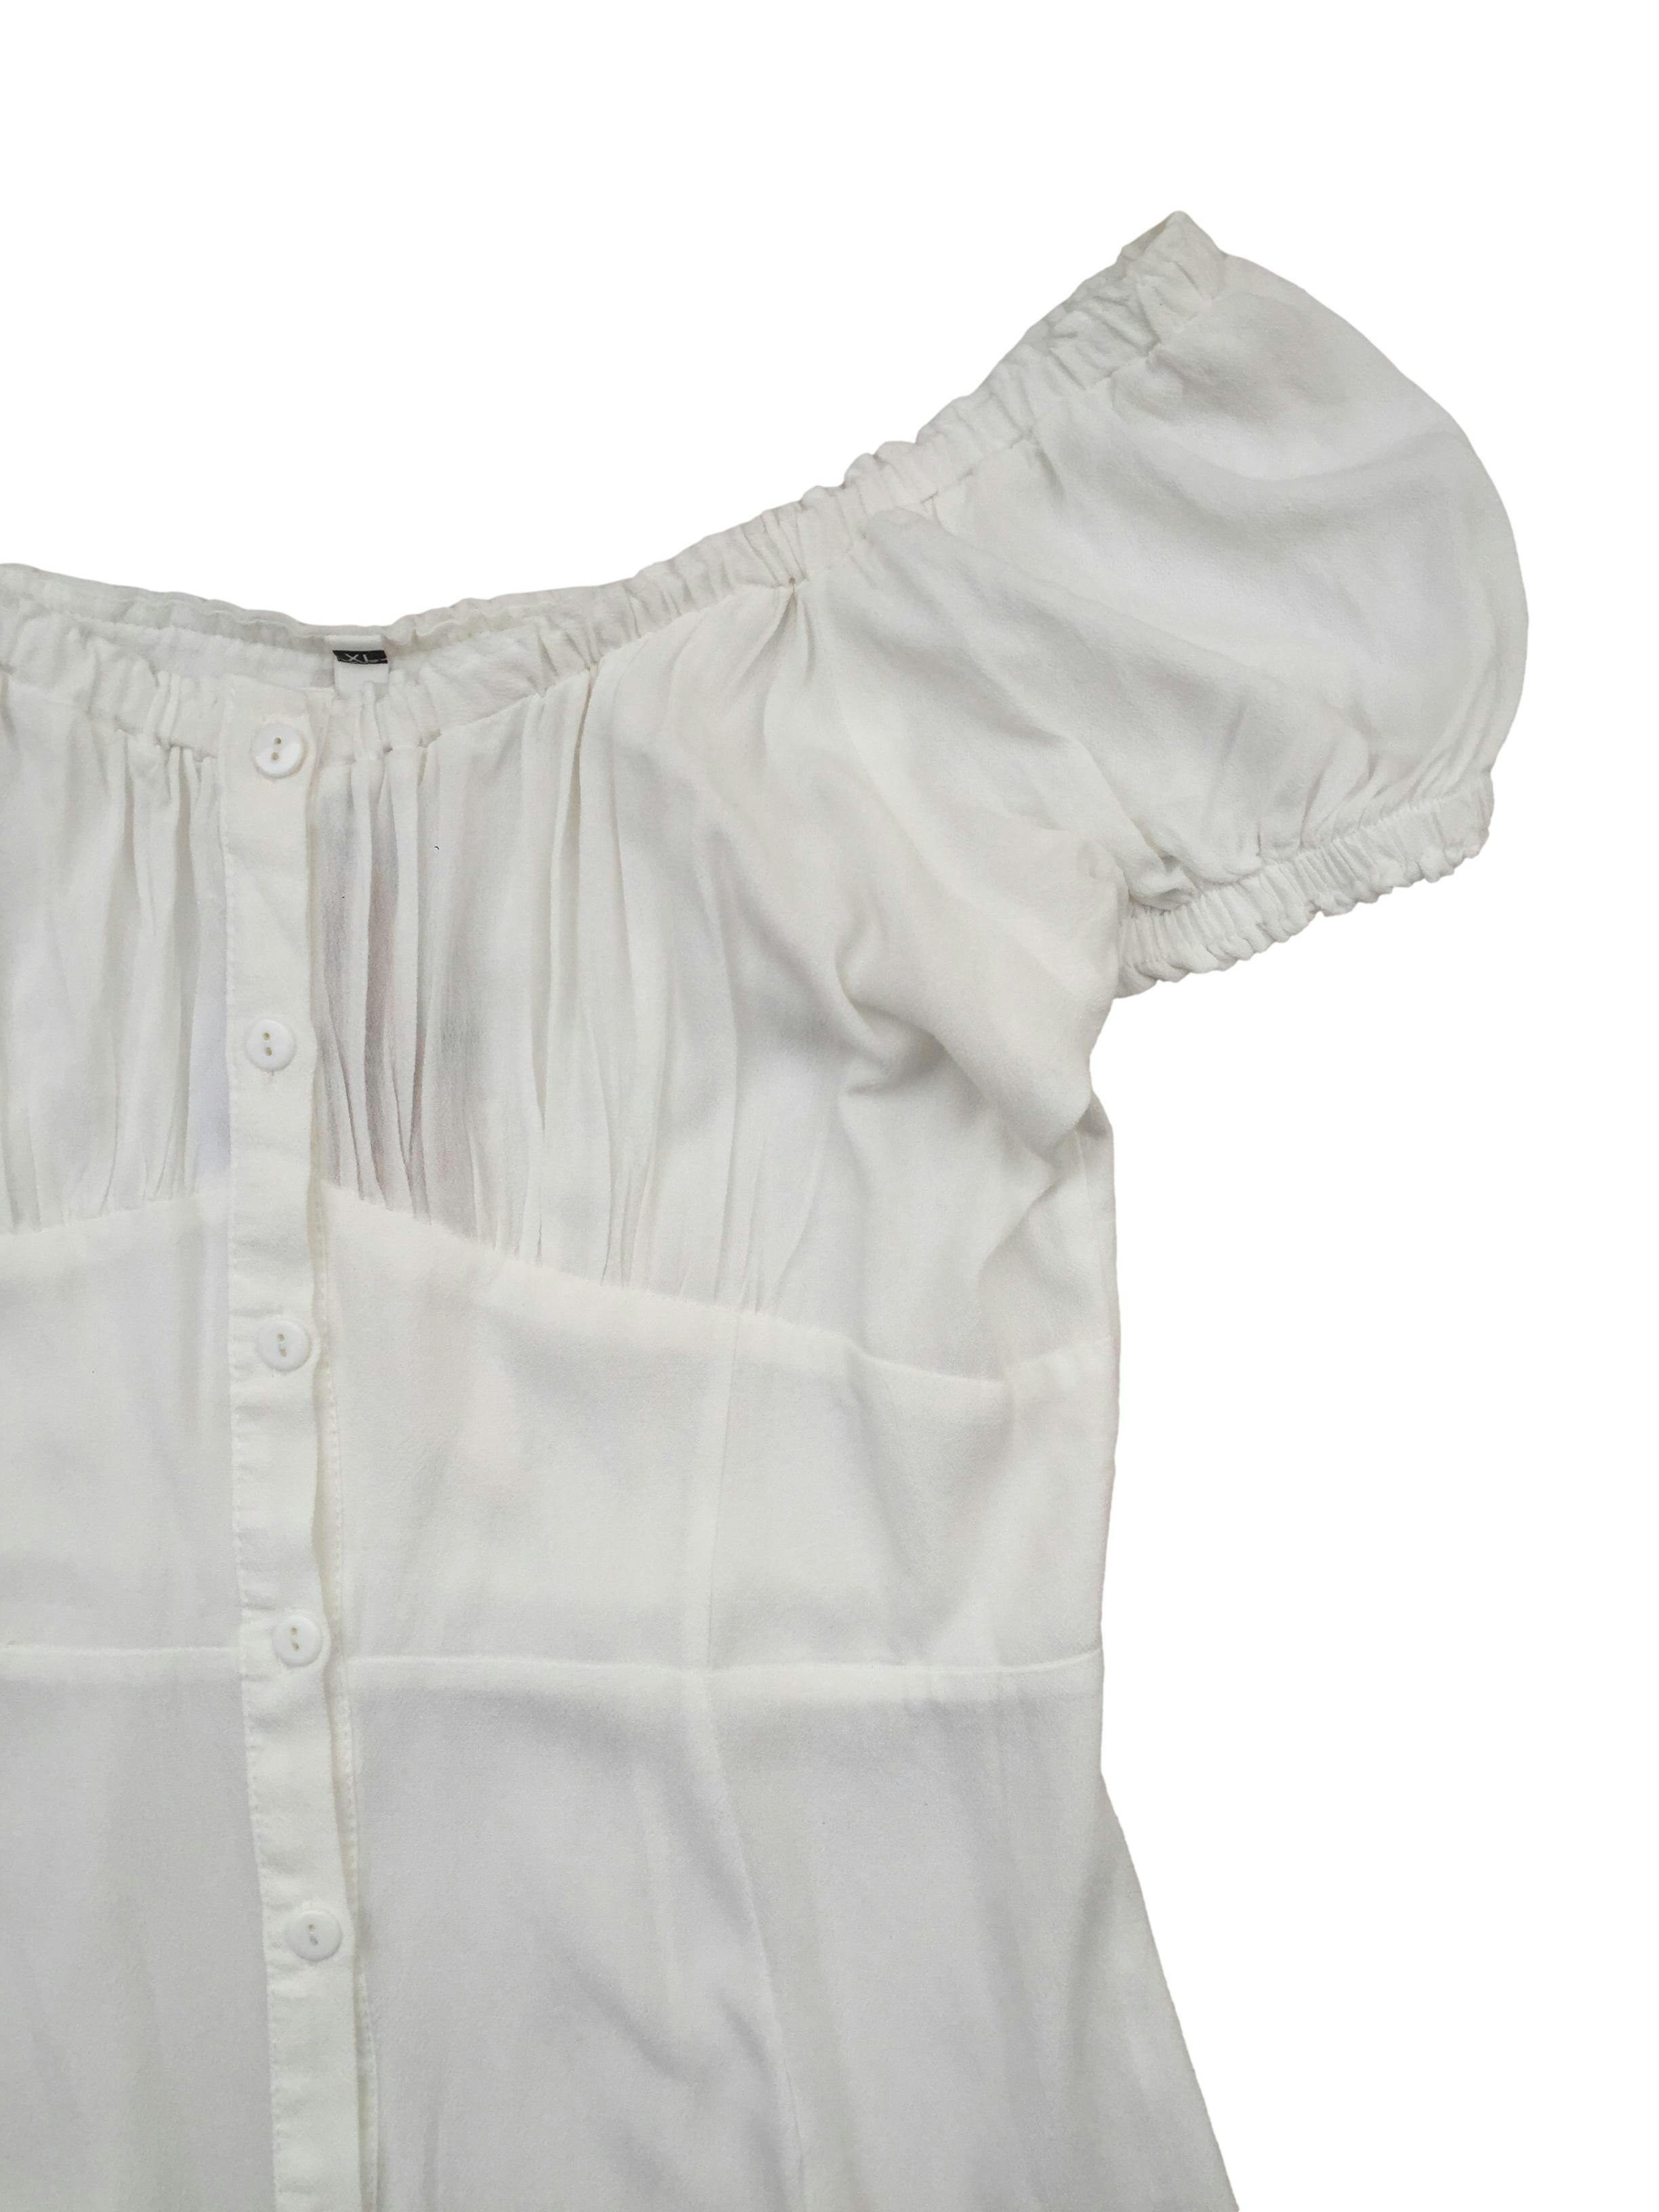 Vestido blanco Sybilla de tela fresca, corte en A con escote off-shoulder, mangas abullonadas y fruncido en pecho. Nuevo con etiqueta y botón de repuesto. Busto 110cm, Largo 85cm.